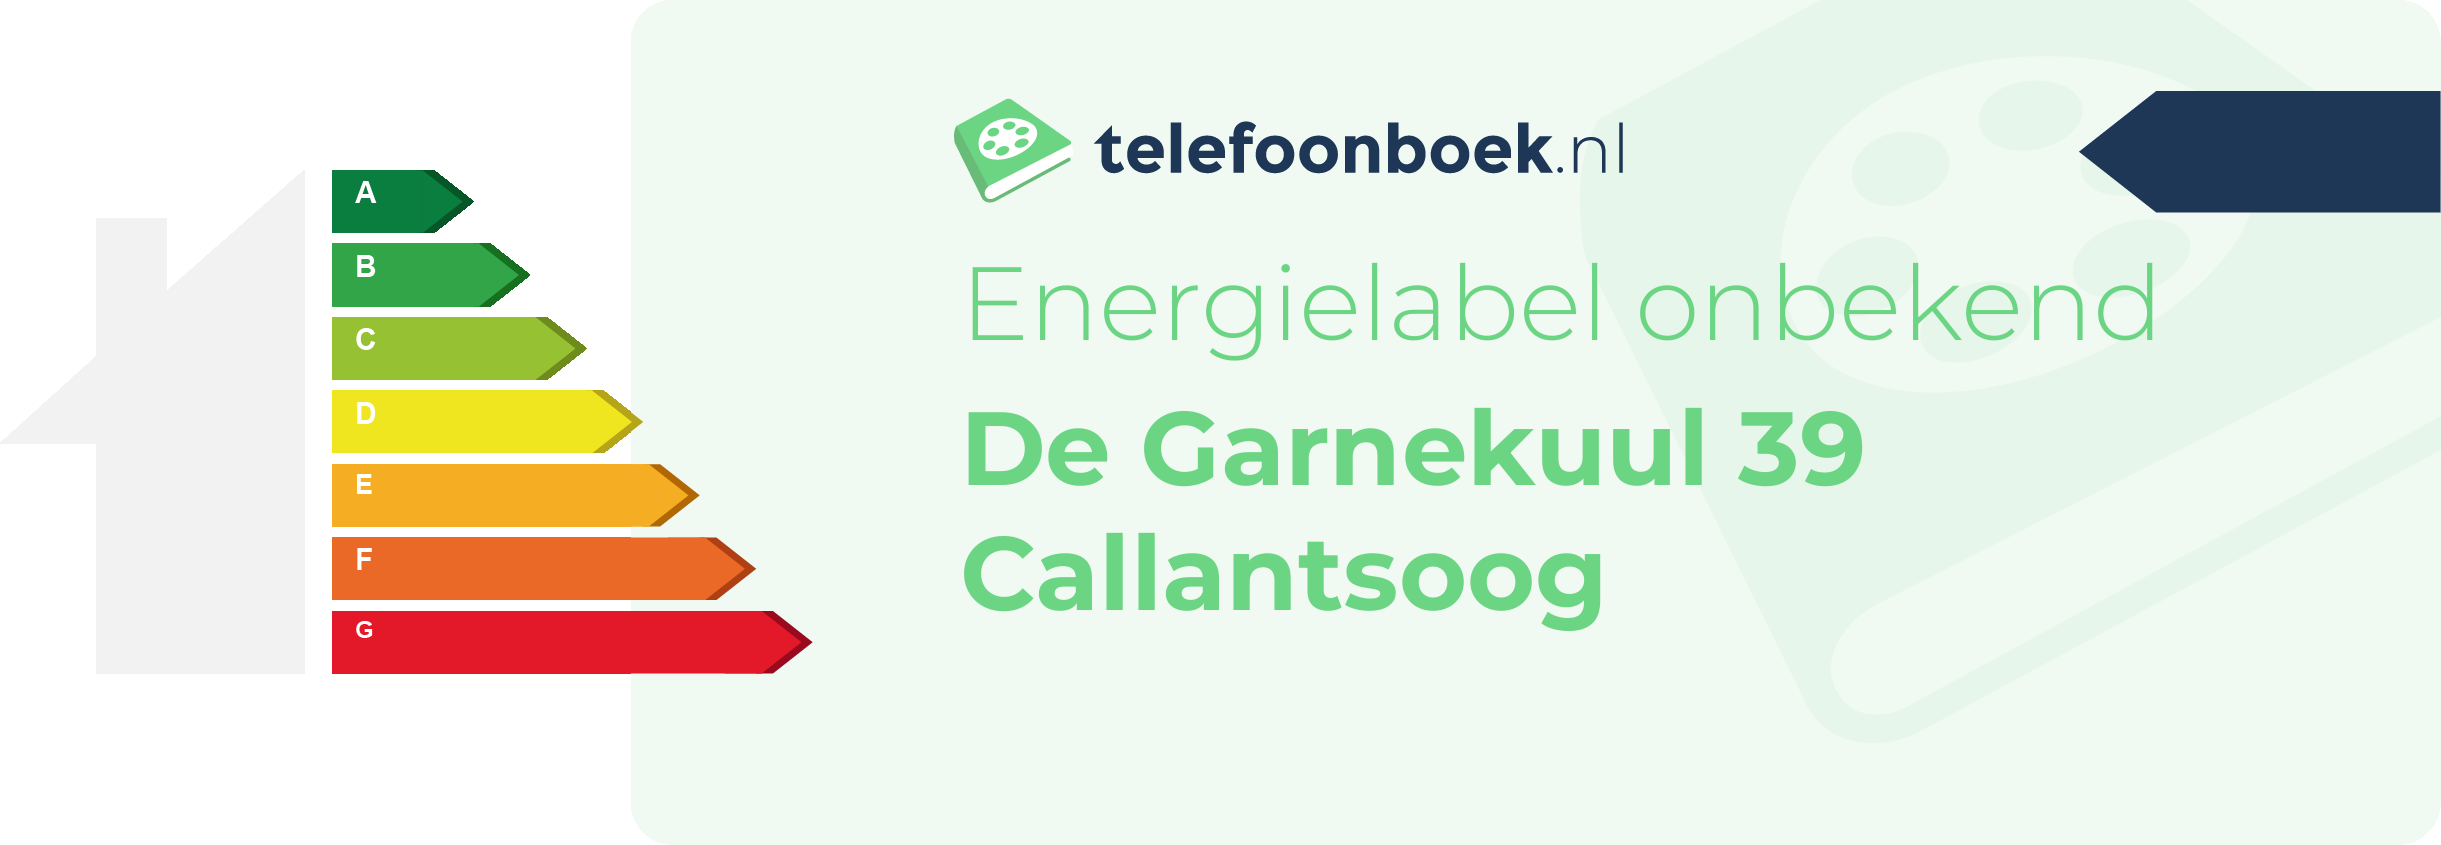 Energielabel De Garnekuul 39 Callantsoog